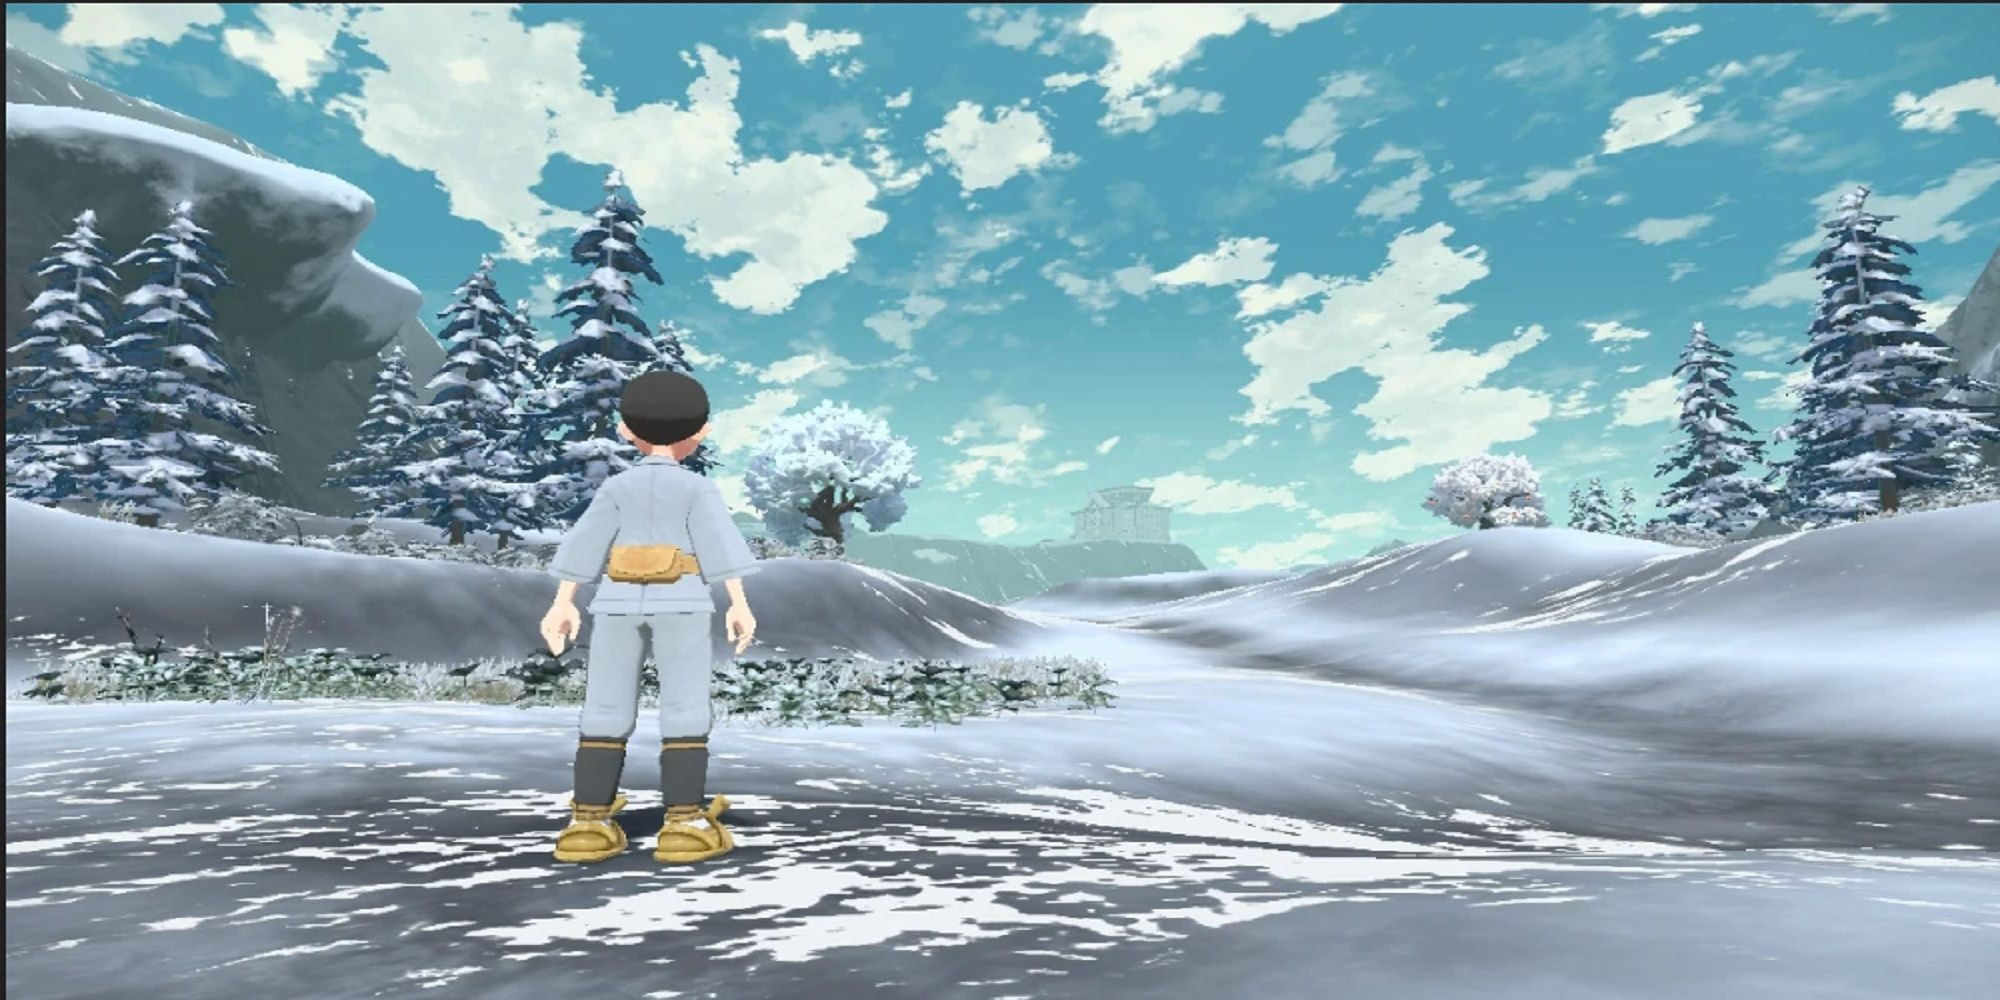 ◓ Pokémon Hisuian Snow: Websérie baseada em Pokémon Legends Arceus será  lançada em maio!